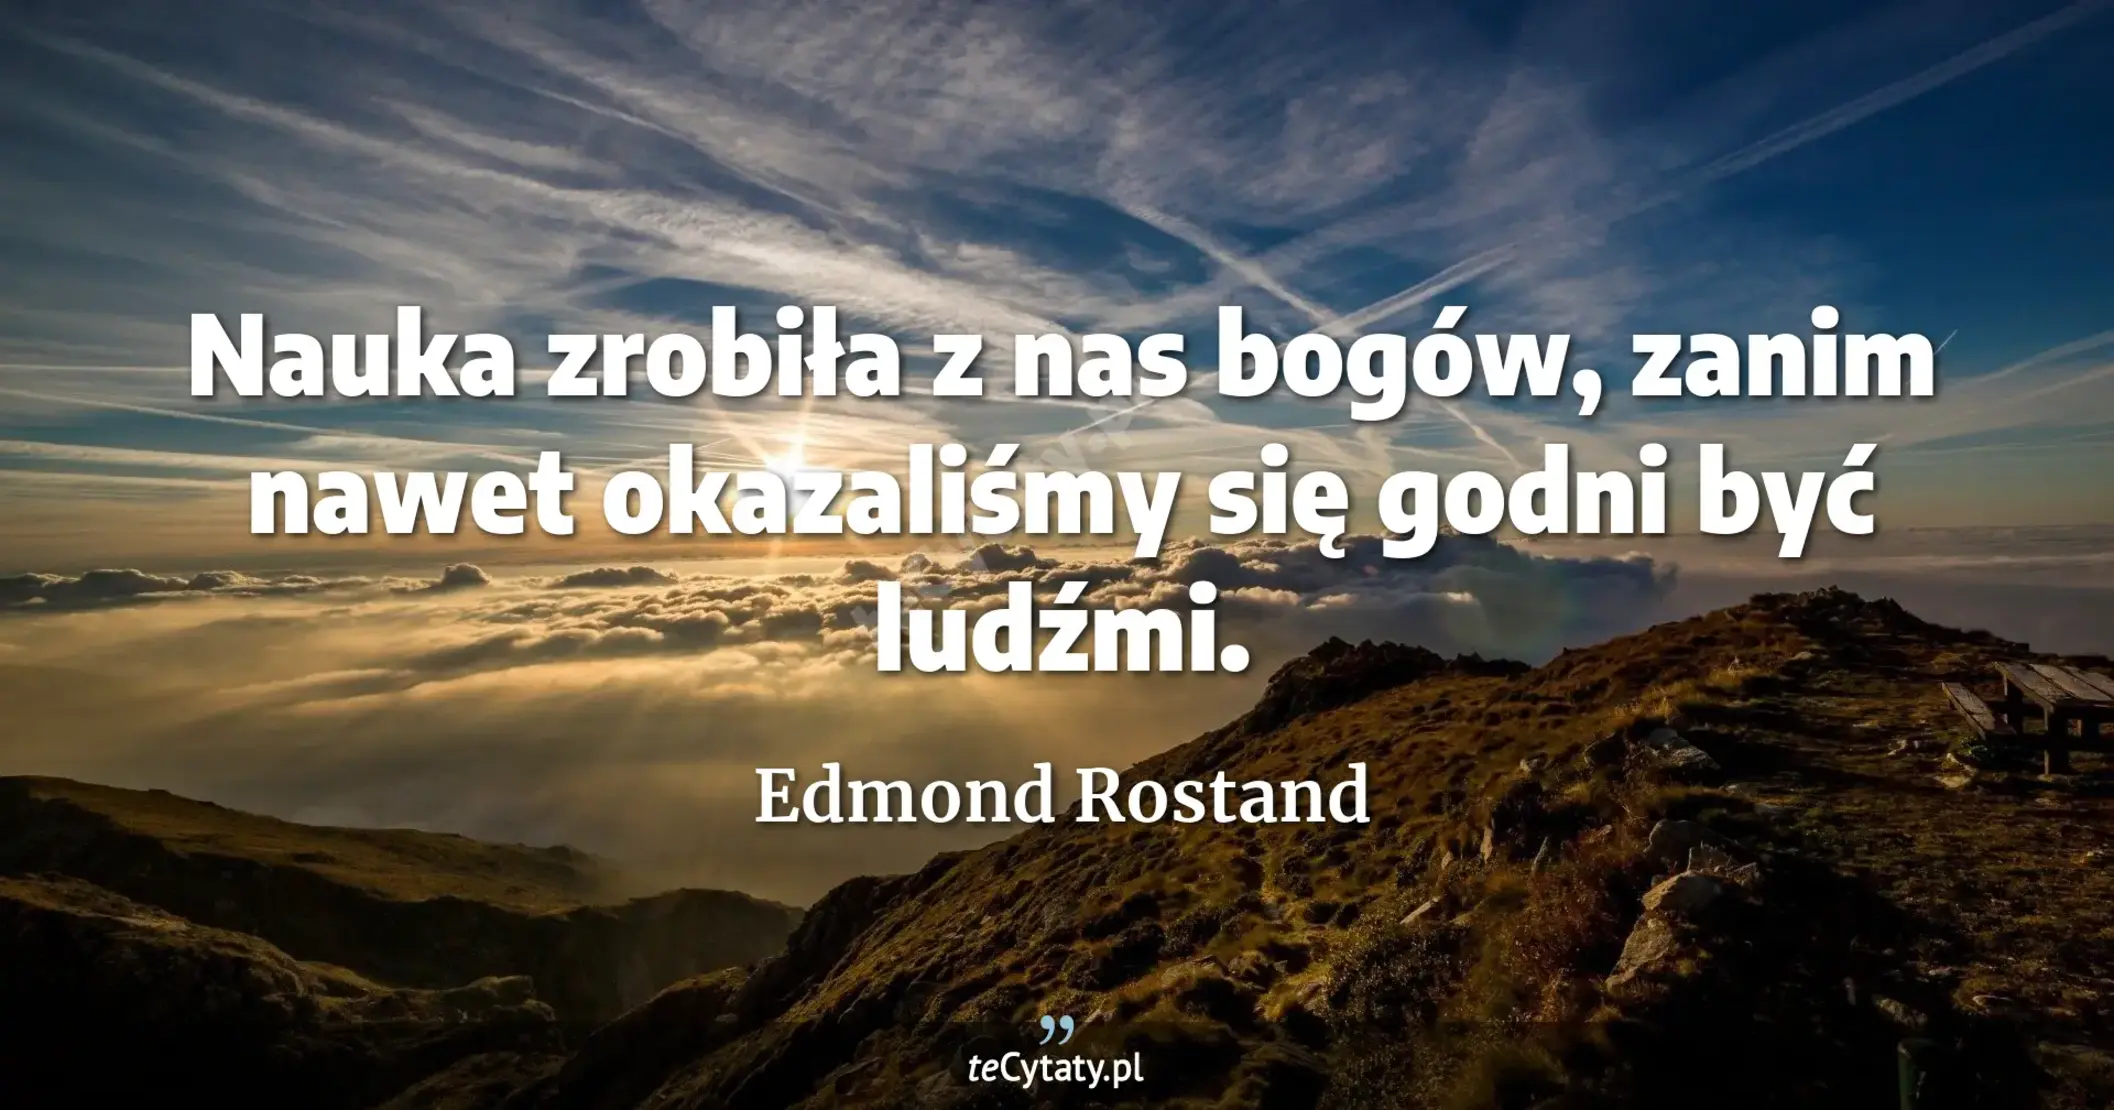 Nauka zrobiła z nas bogów, zanim nawet okazaliśmy się godni być ludźmi. - Edmond Rostand